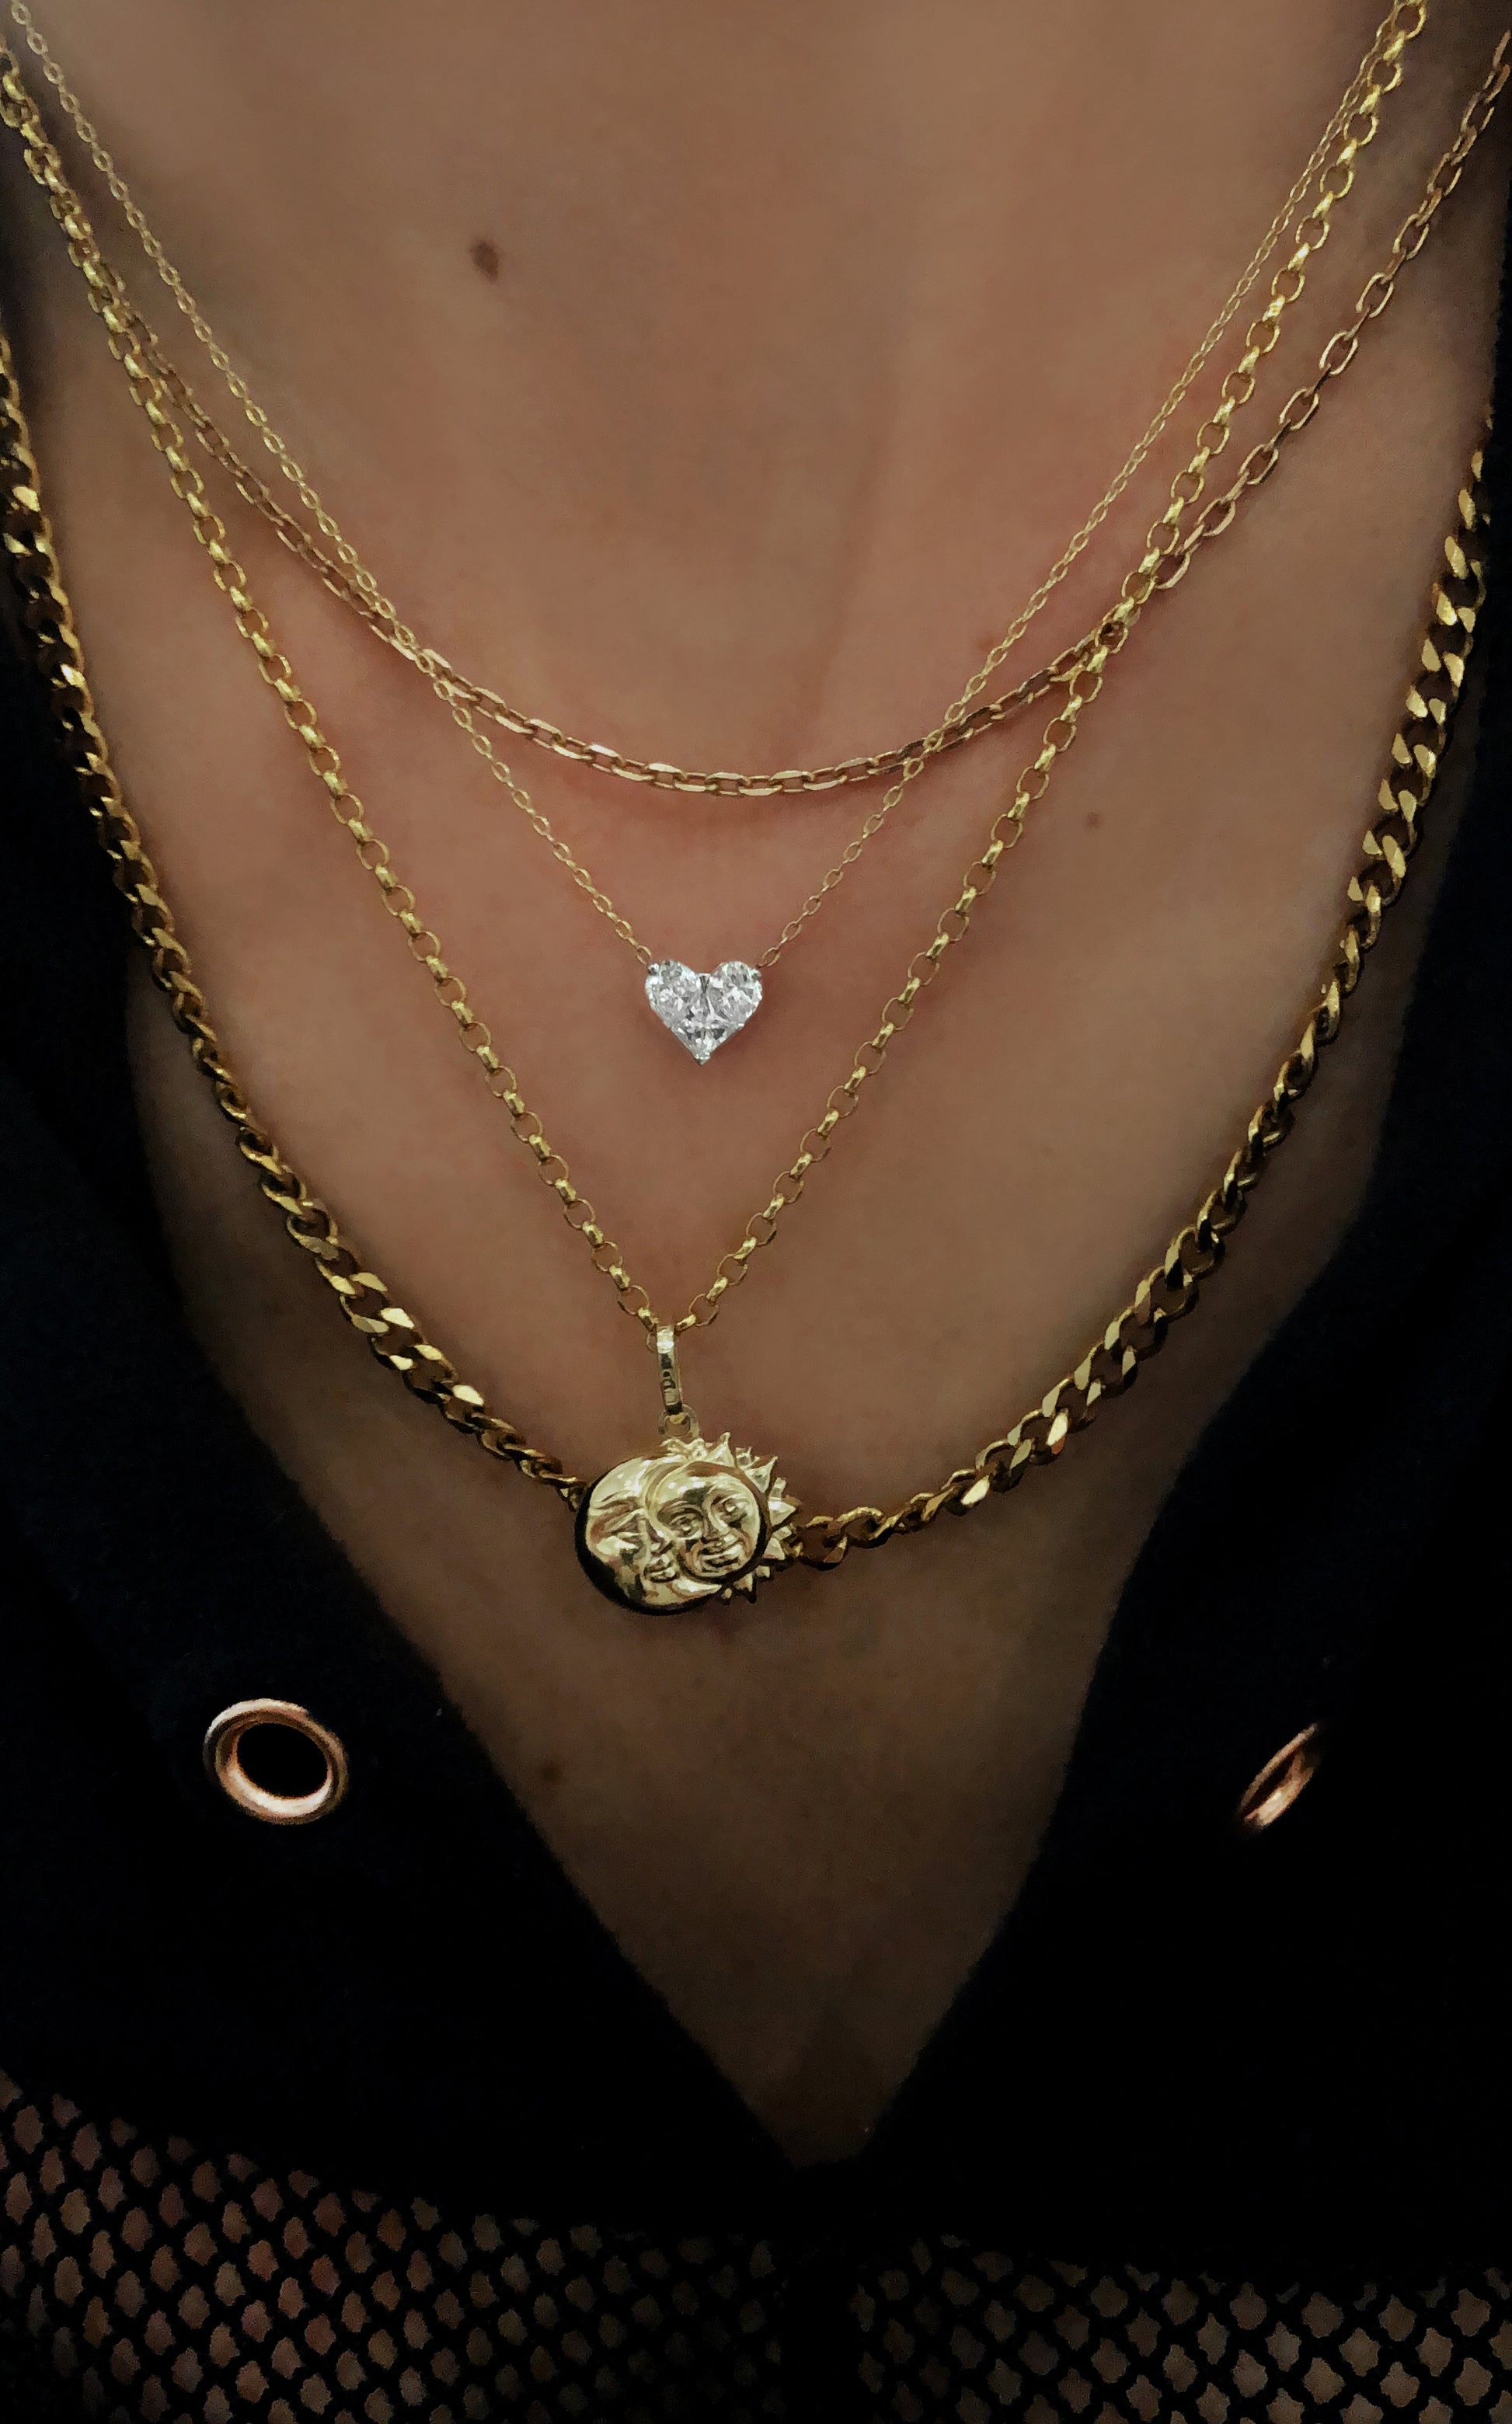 14kt gold flat link chain necklace - Luna Skye